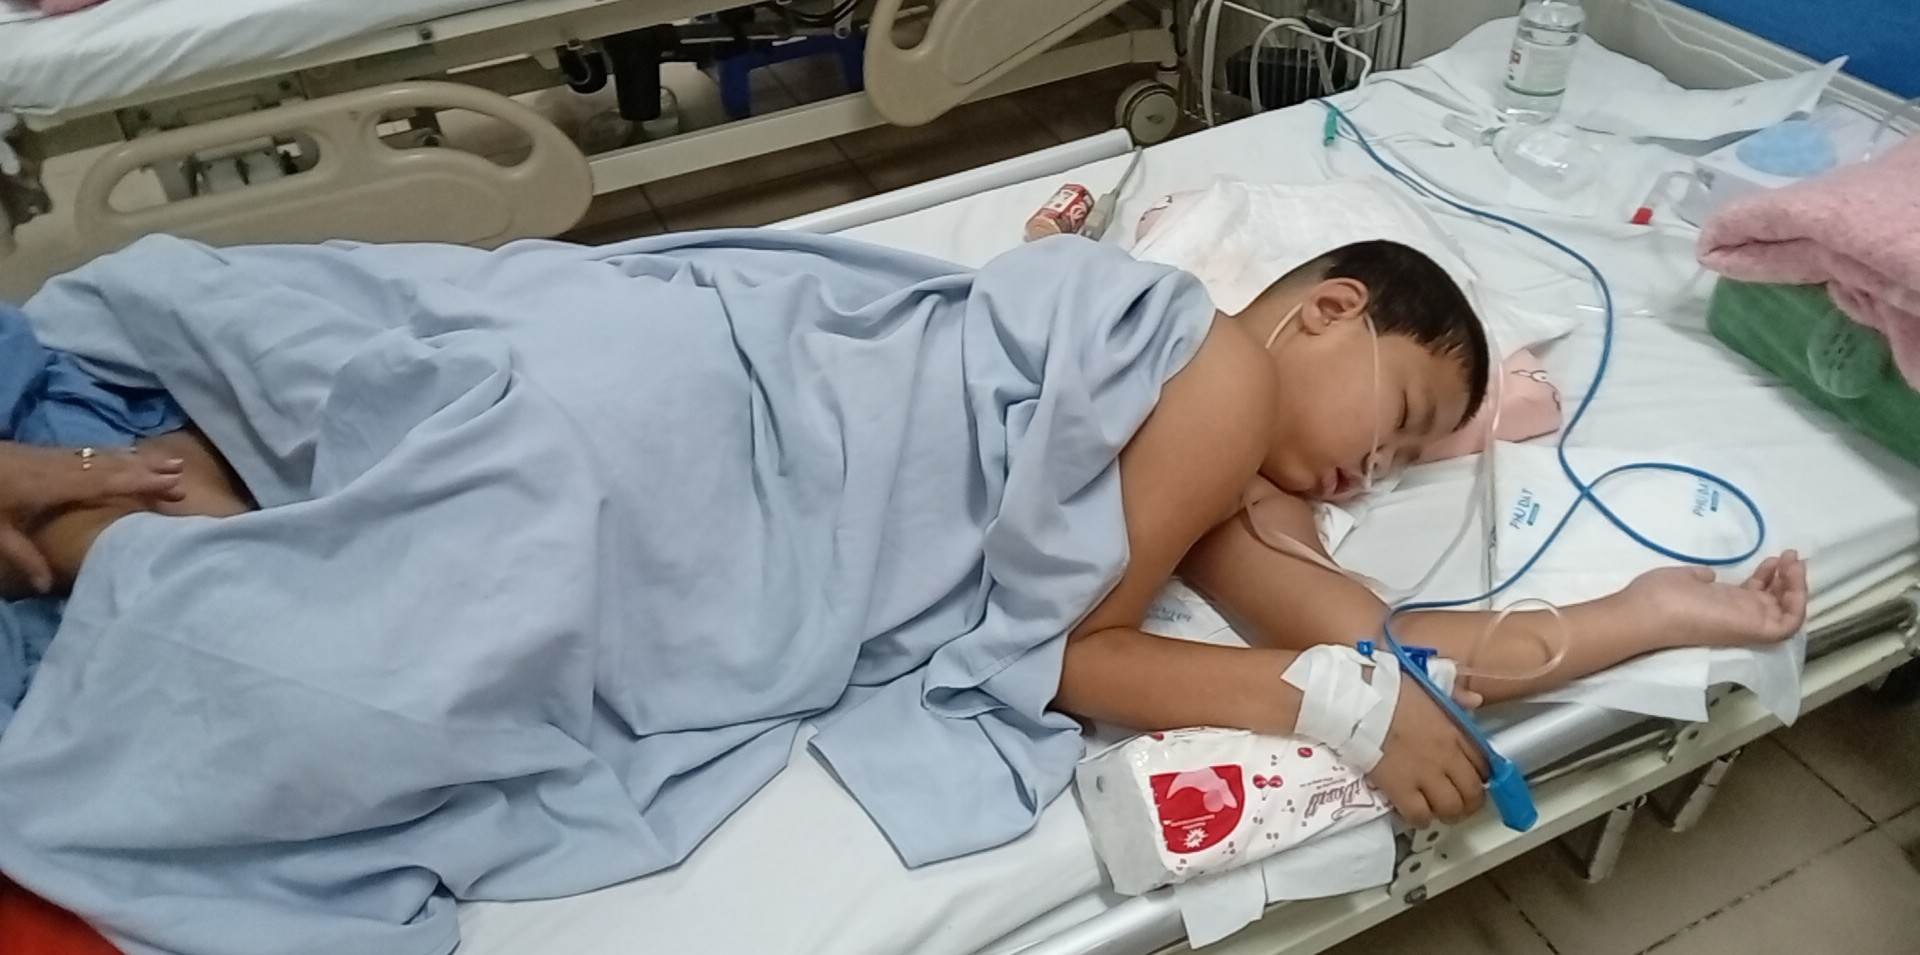 Cháu Nam hiện đang điều trị tại Bệnh viện K - Tân Triều, Hà Nội. Ảnh: Gia đình cung cấp.